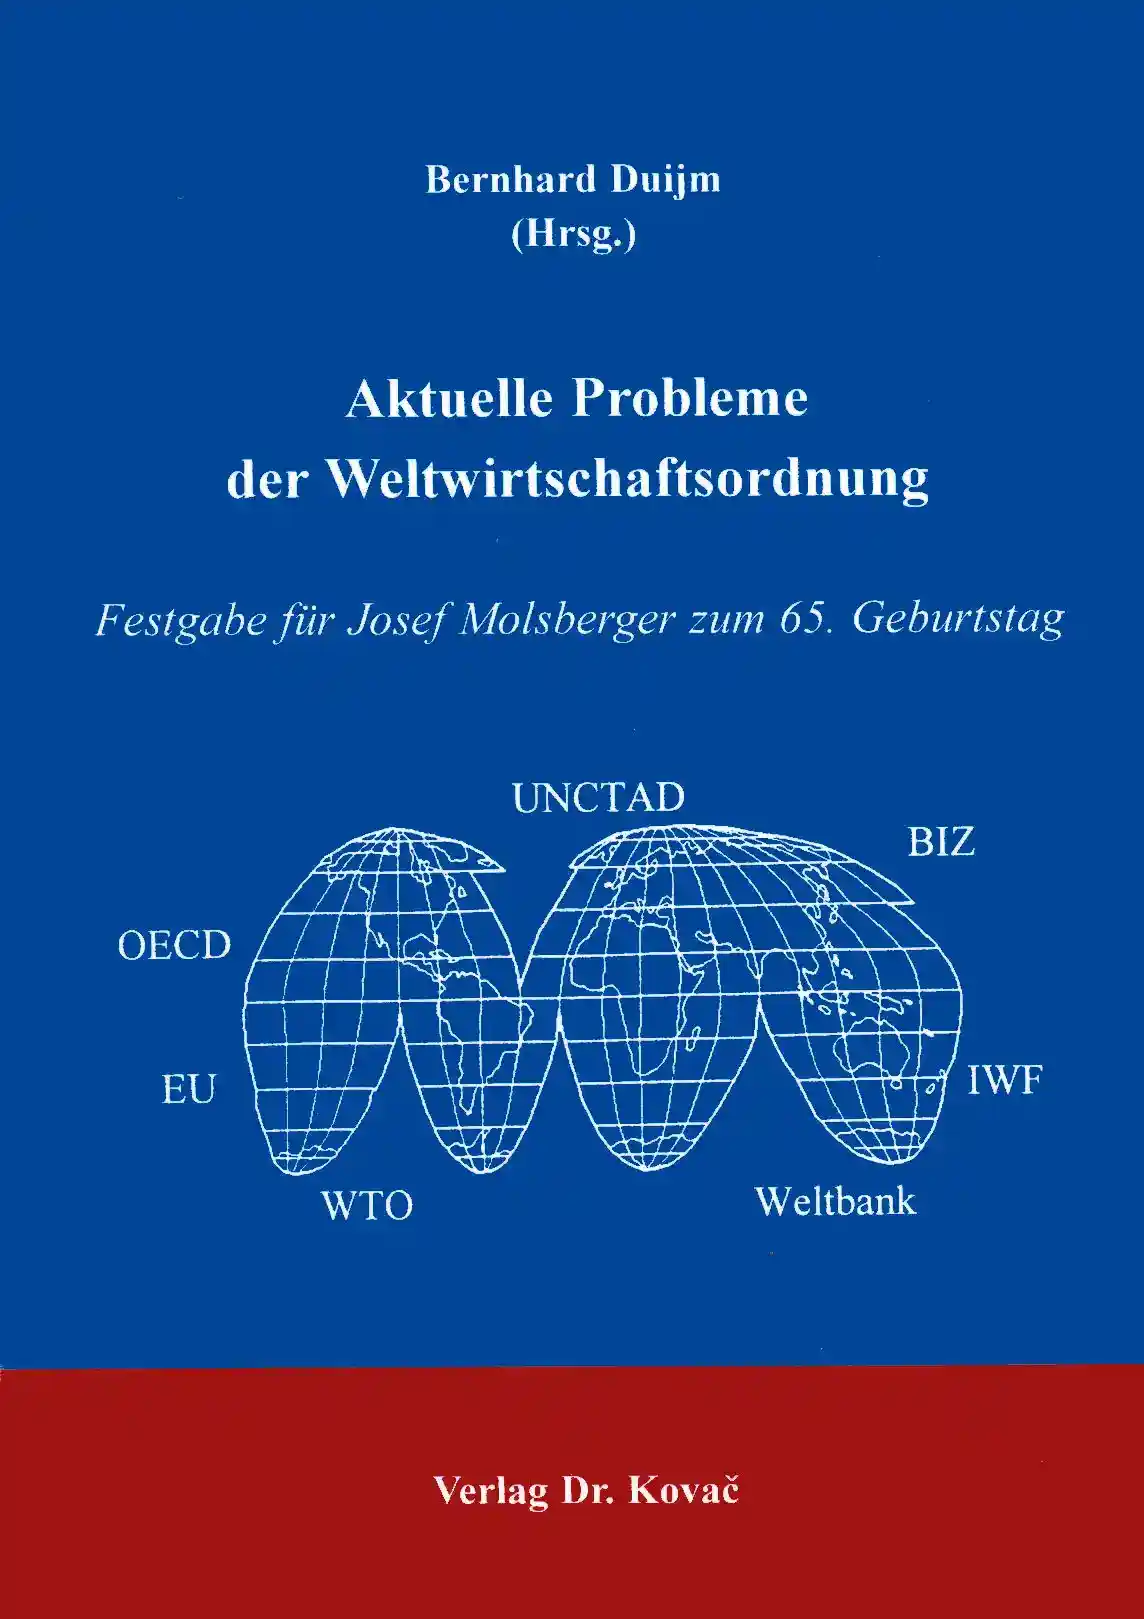 Aktuelle Probleme der Weltwirtschaftsordnung (Festschrift)